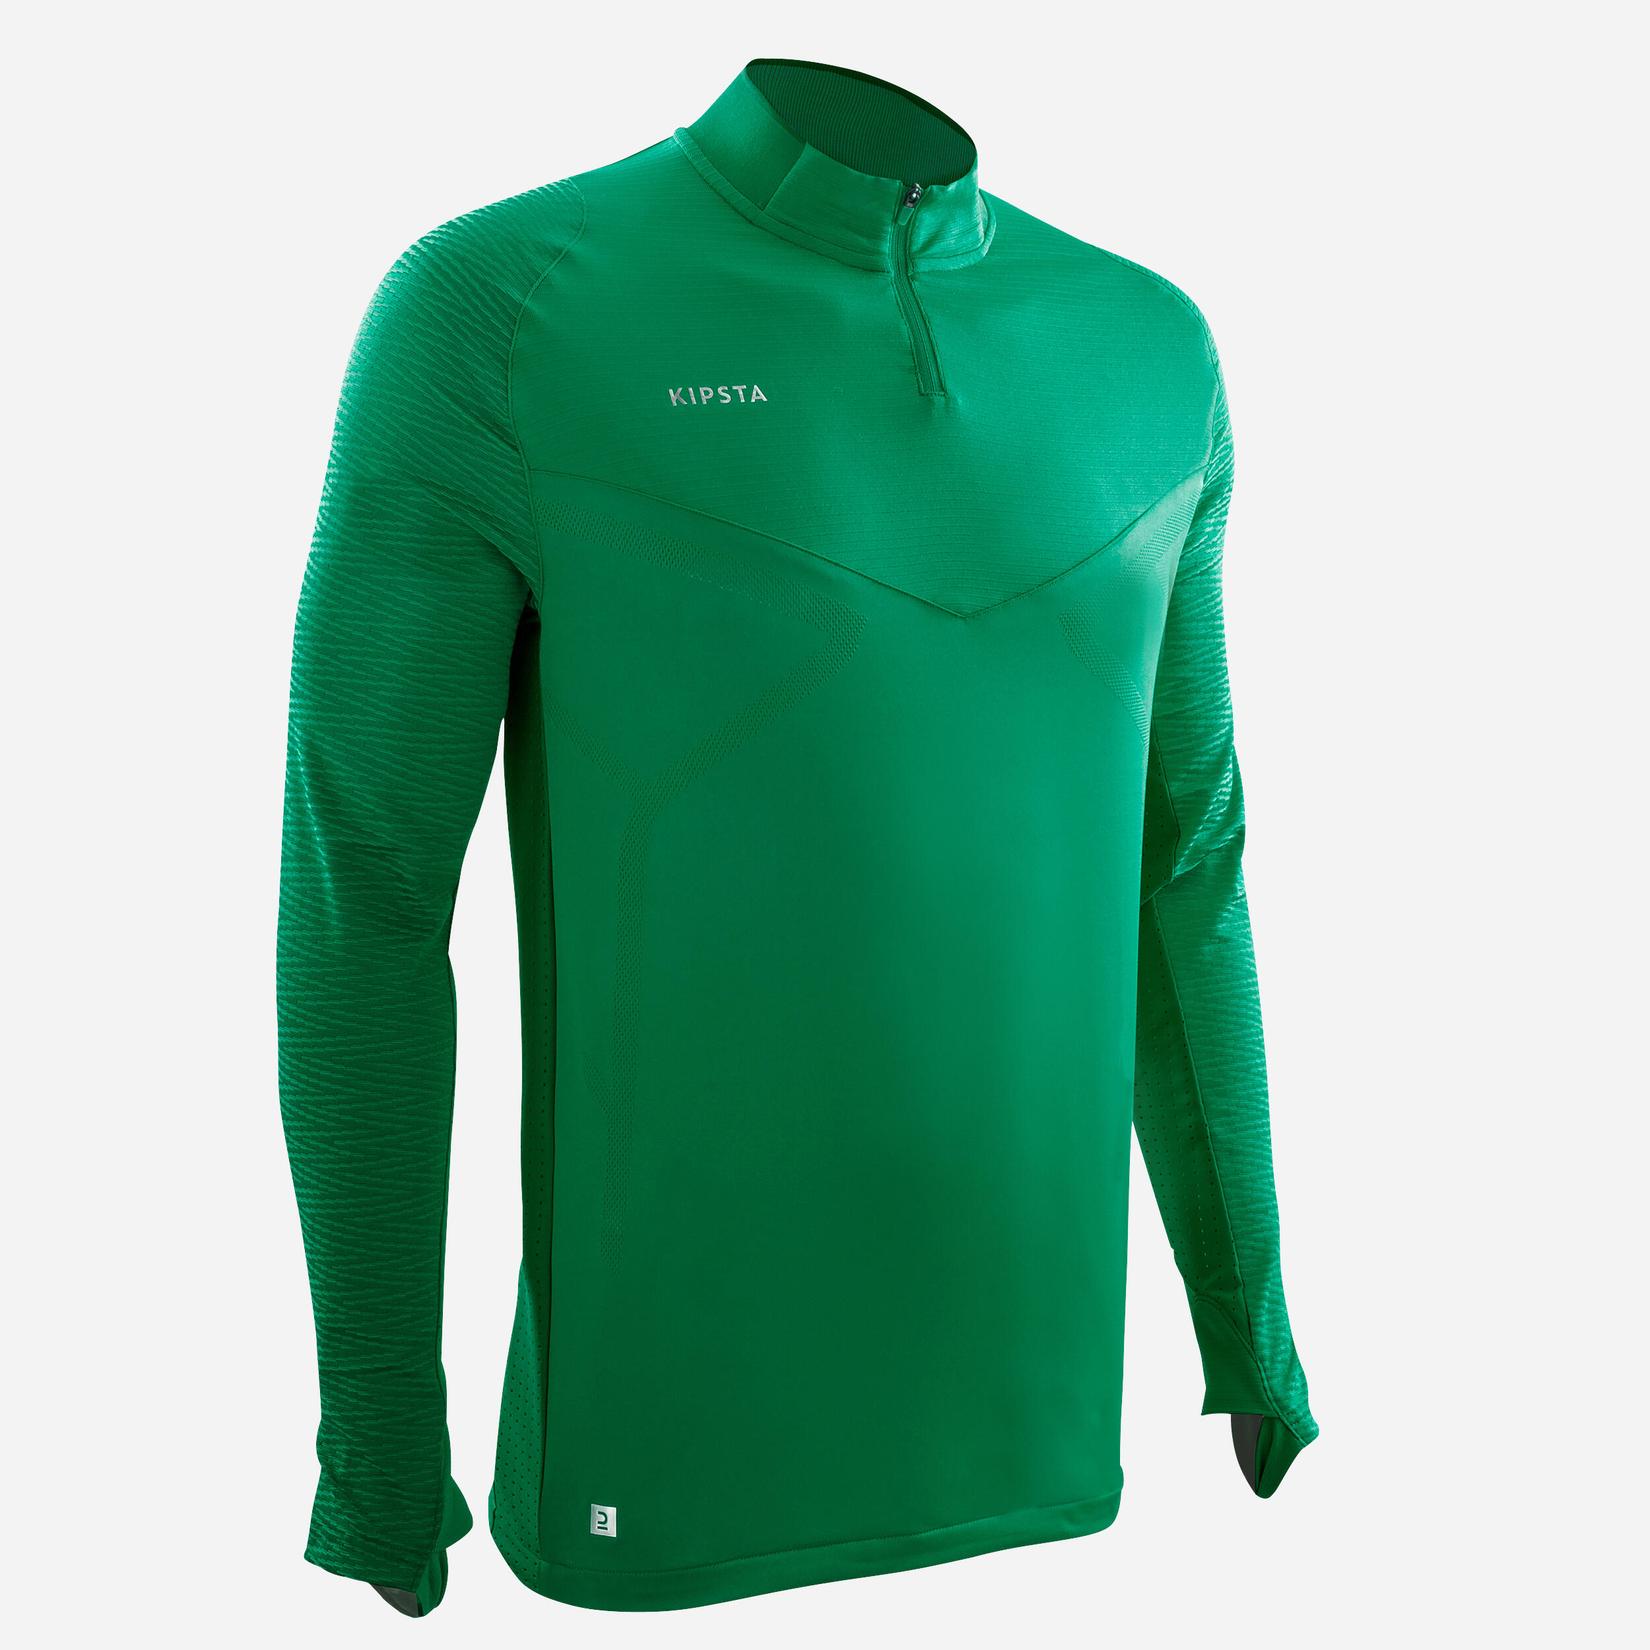 Sweatshirt för fotboll CLR club vuxen grön för 449 kr på Decathlon